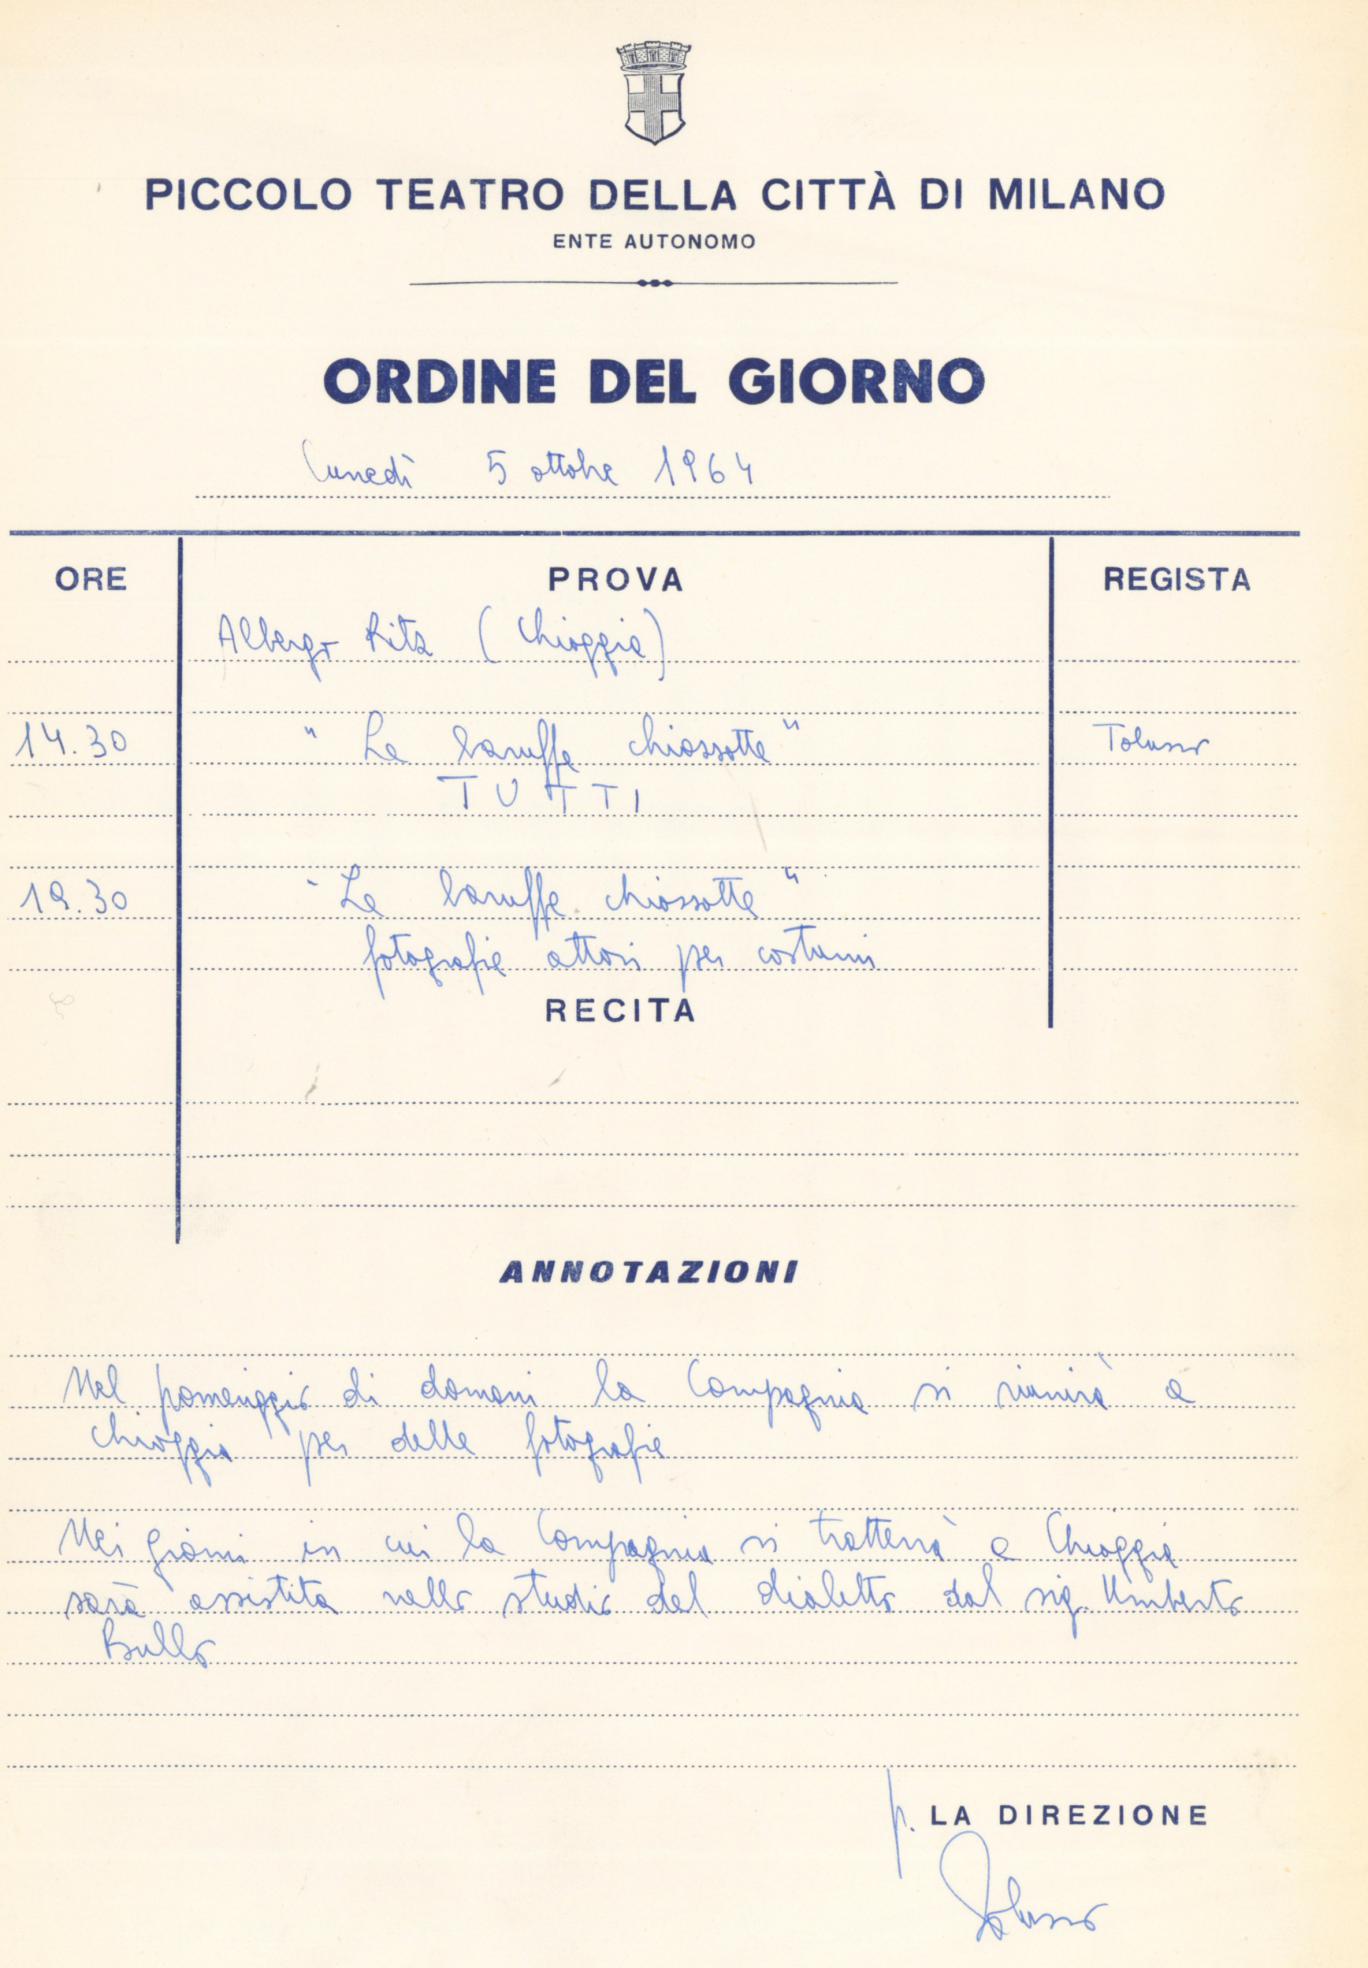 Ordine del giorno: Chioggia, 5 ottobre 1964- Archivio Piccolo Teatro di Milano